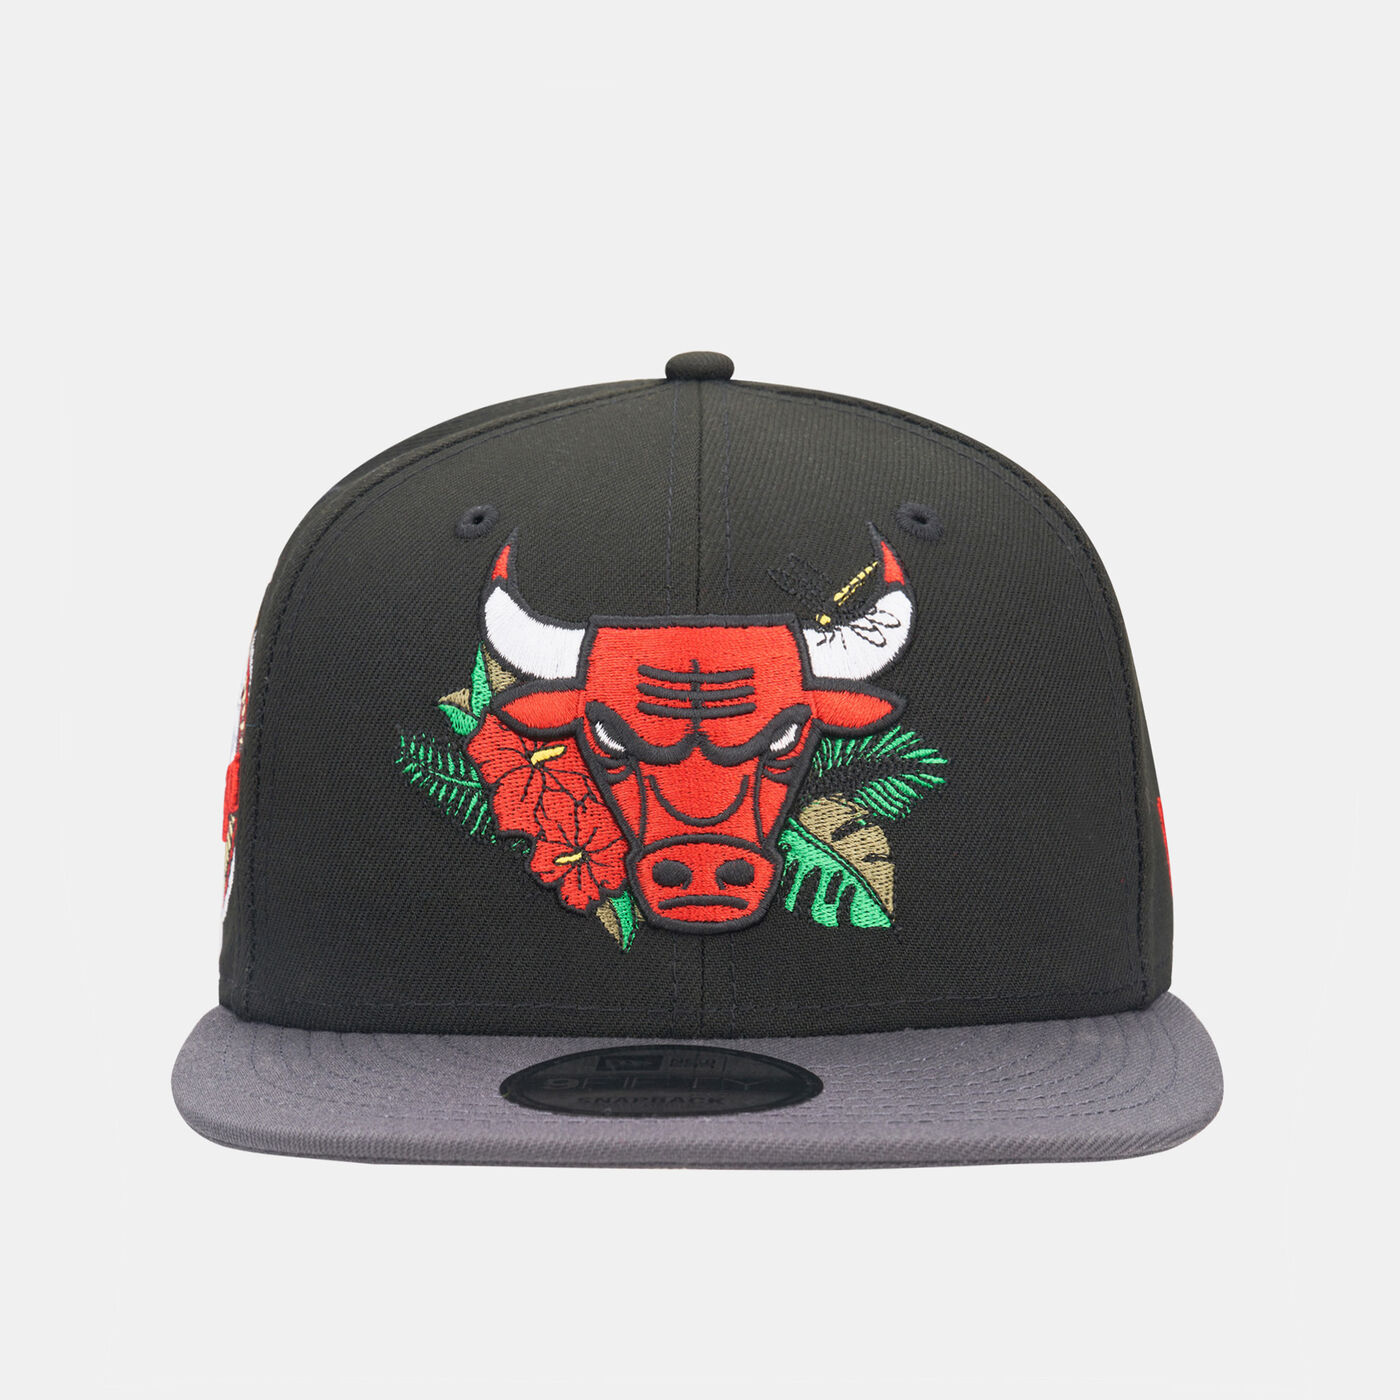 Men's NBA Chicago Bulls Floral 9FIFTY Cap